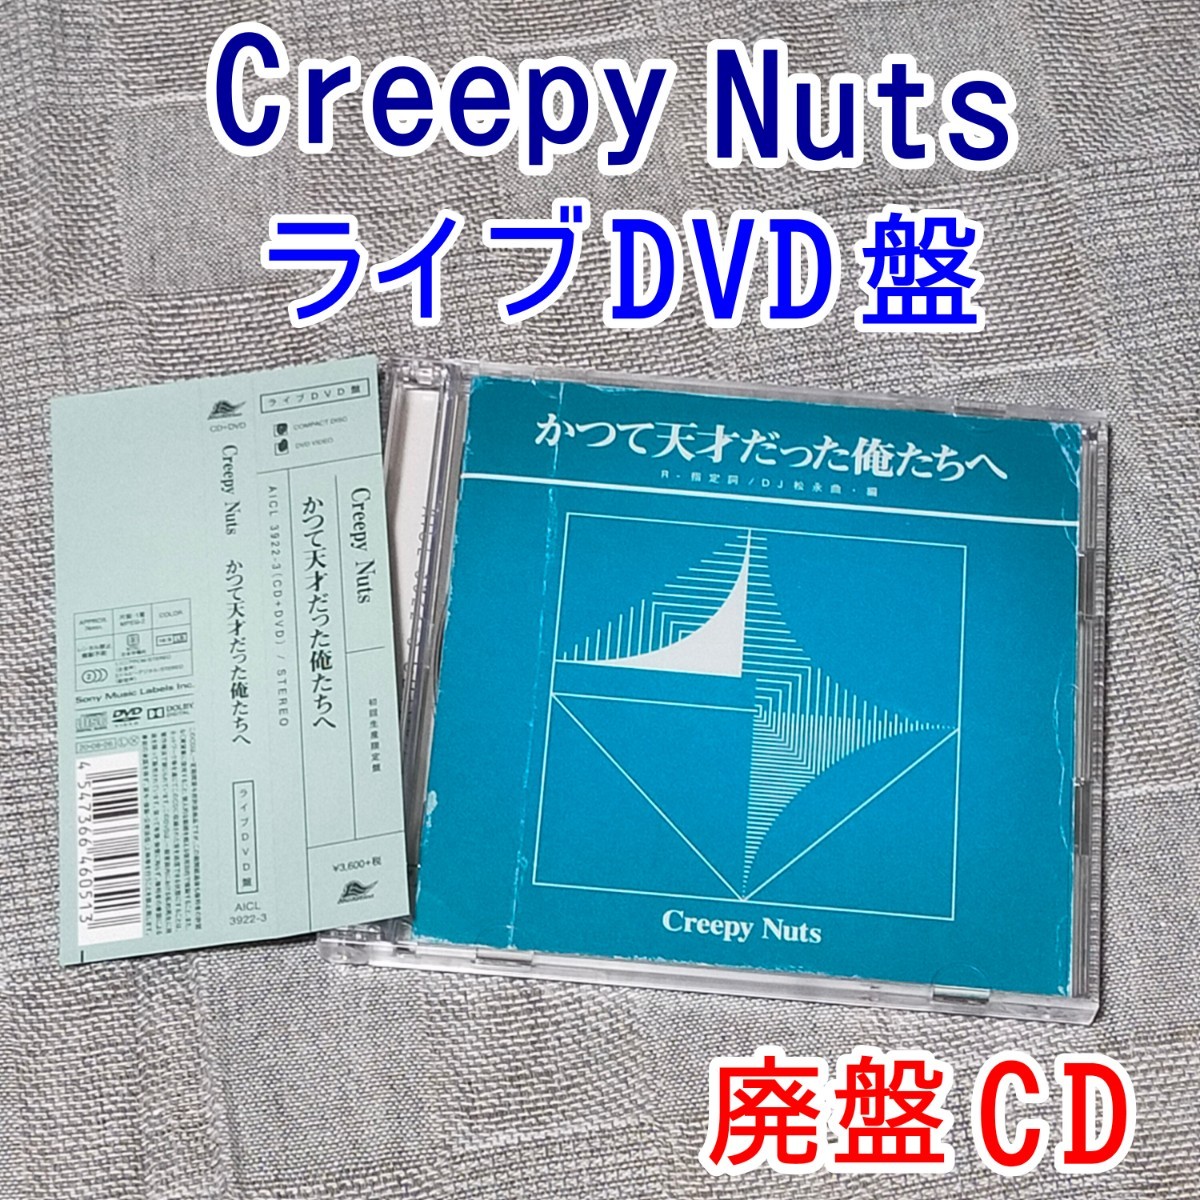 未開封新品 Creepy Nuts 初回限定盤 かつて天才だった俺たちへ DVD